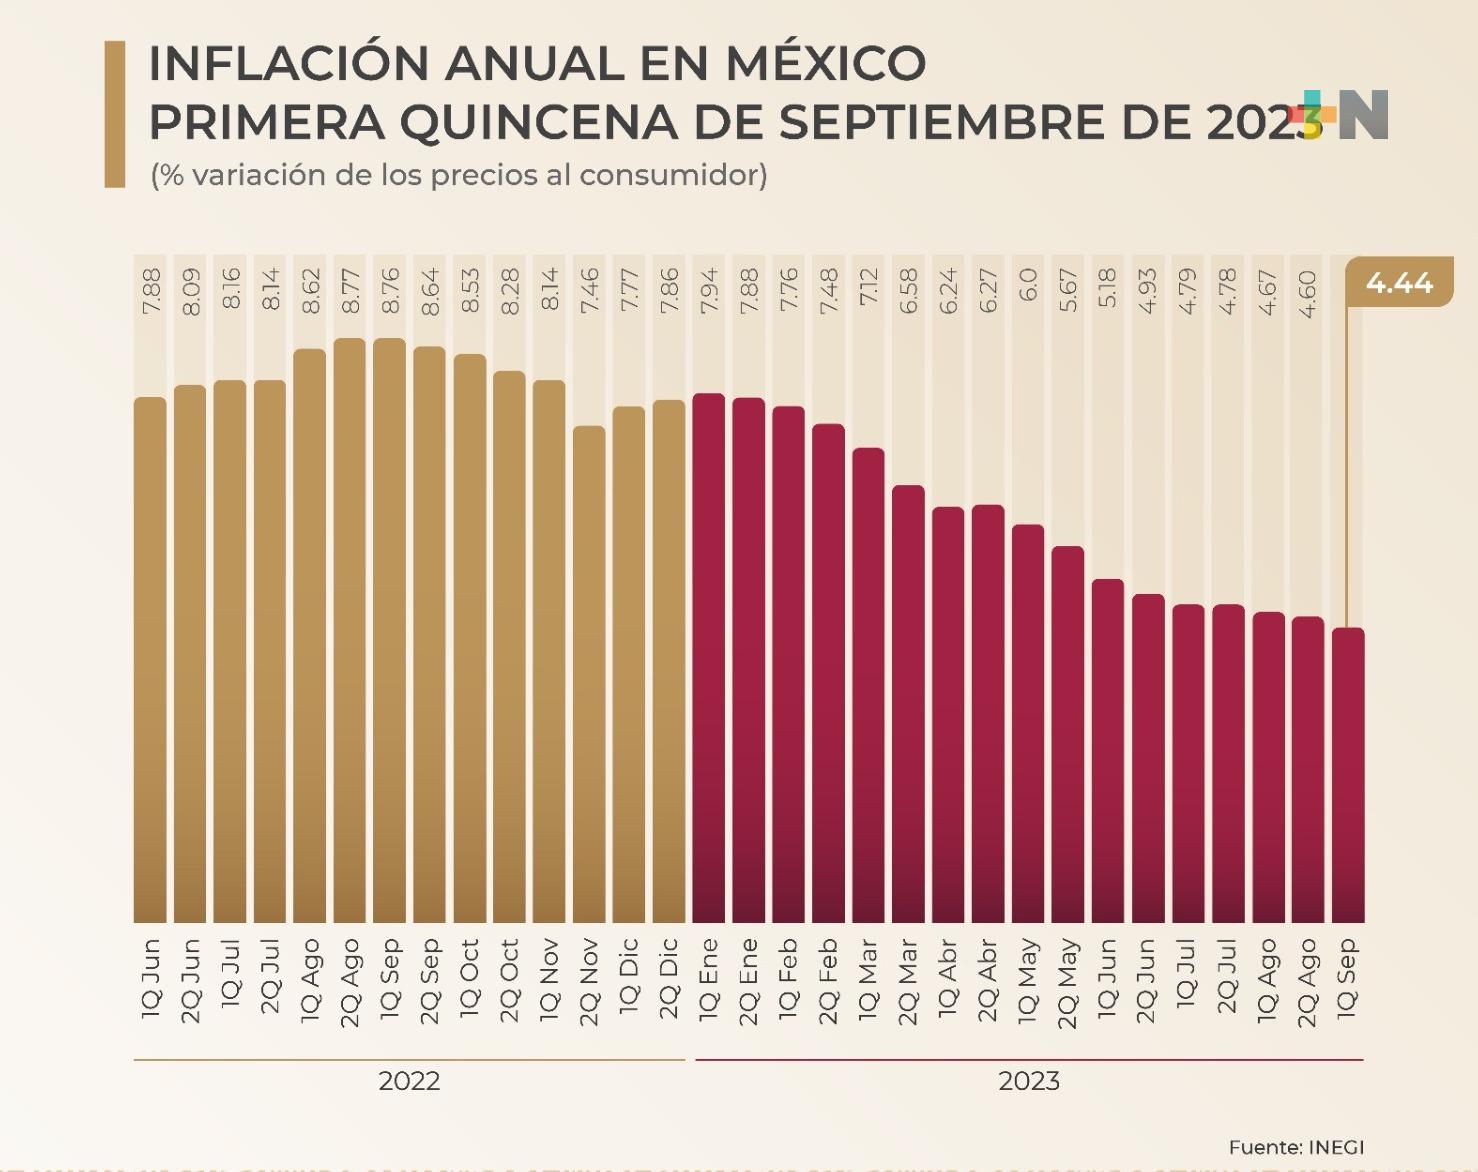 Inflación en México baja a 4.44 por ciento anual en primera quincena de septiembre